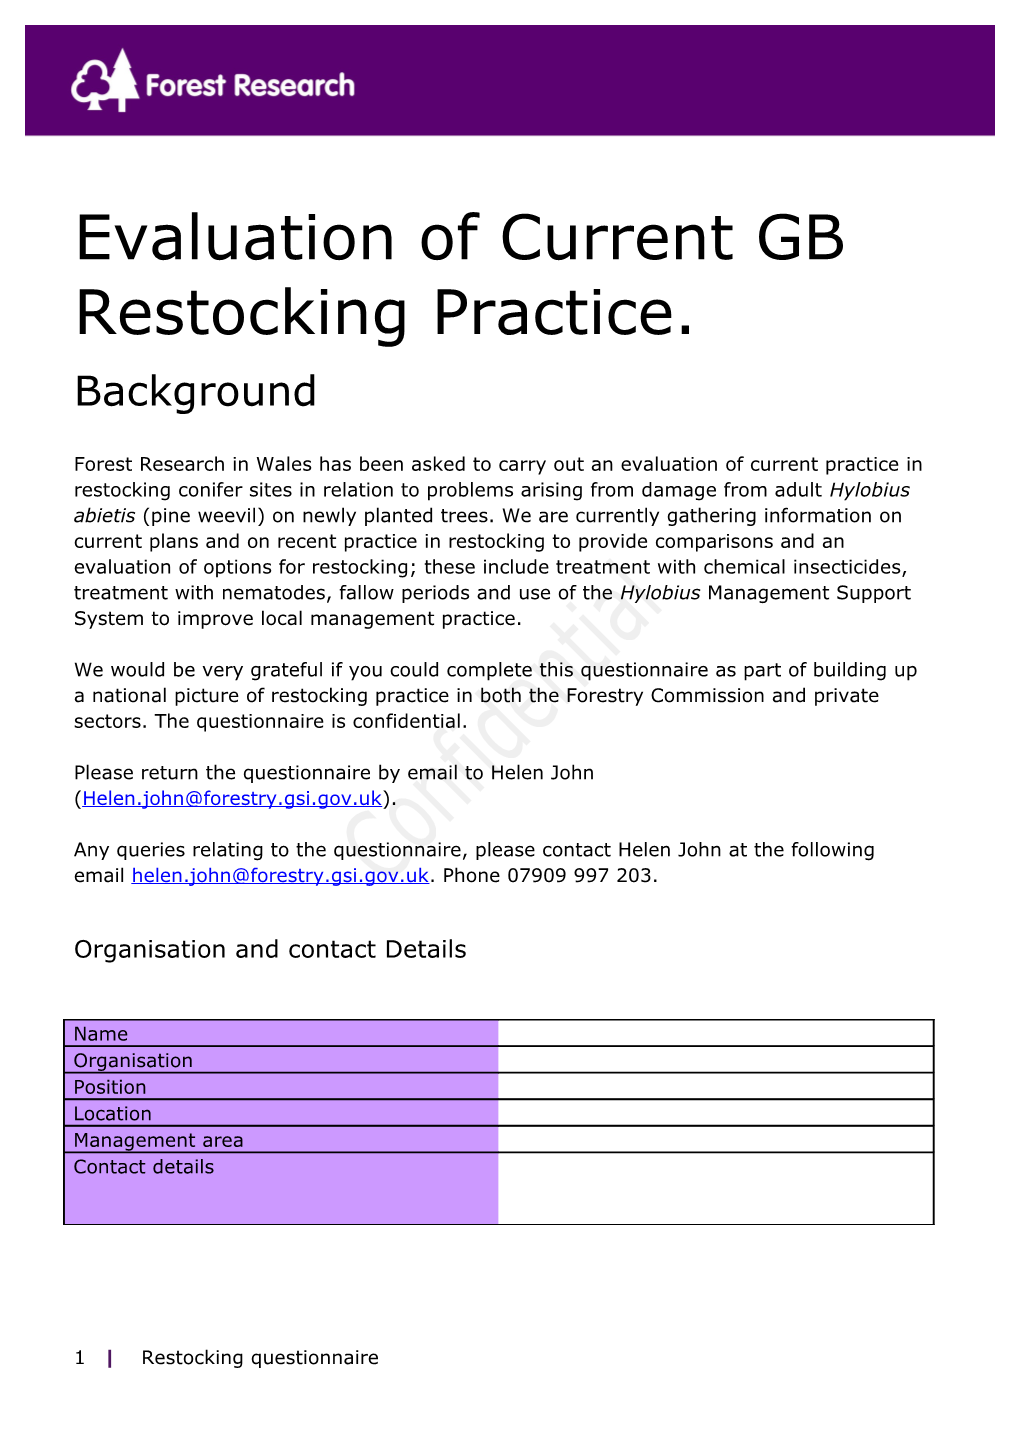 Evaluation of Current GB Restocking Practice